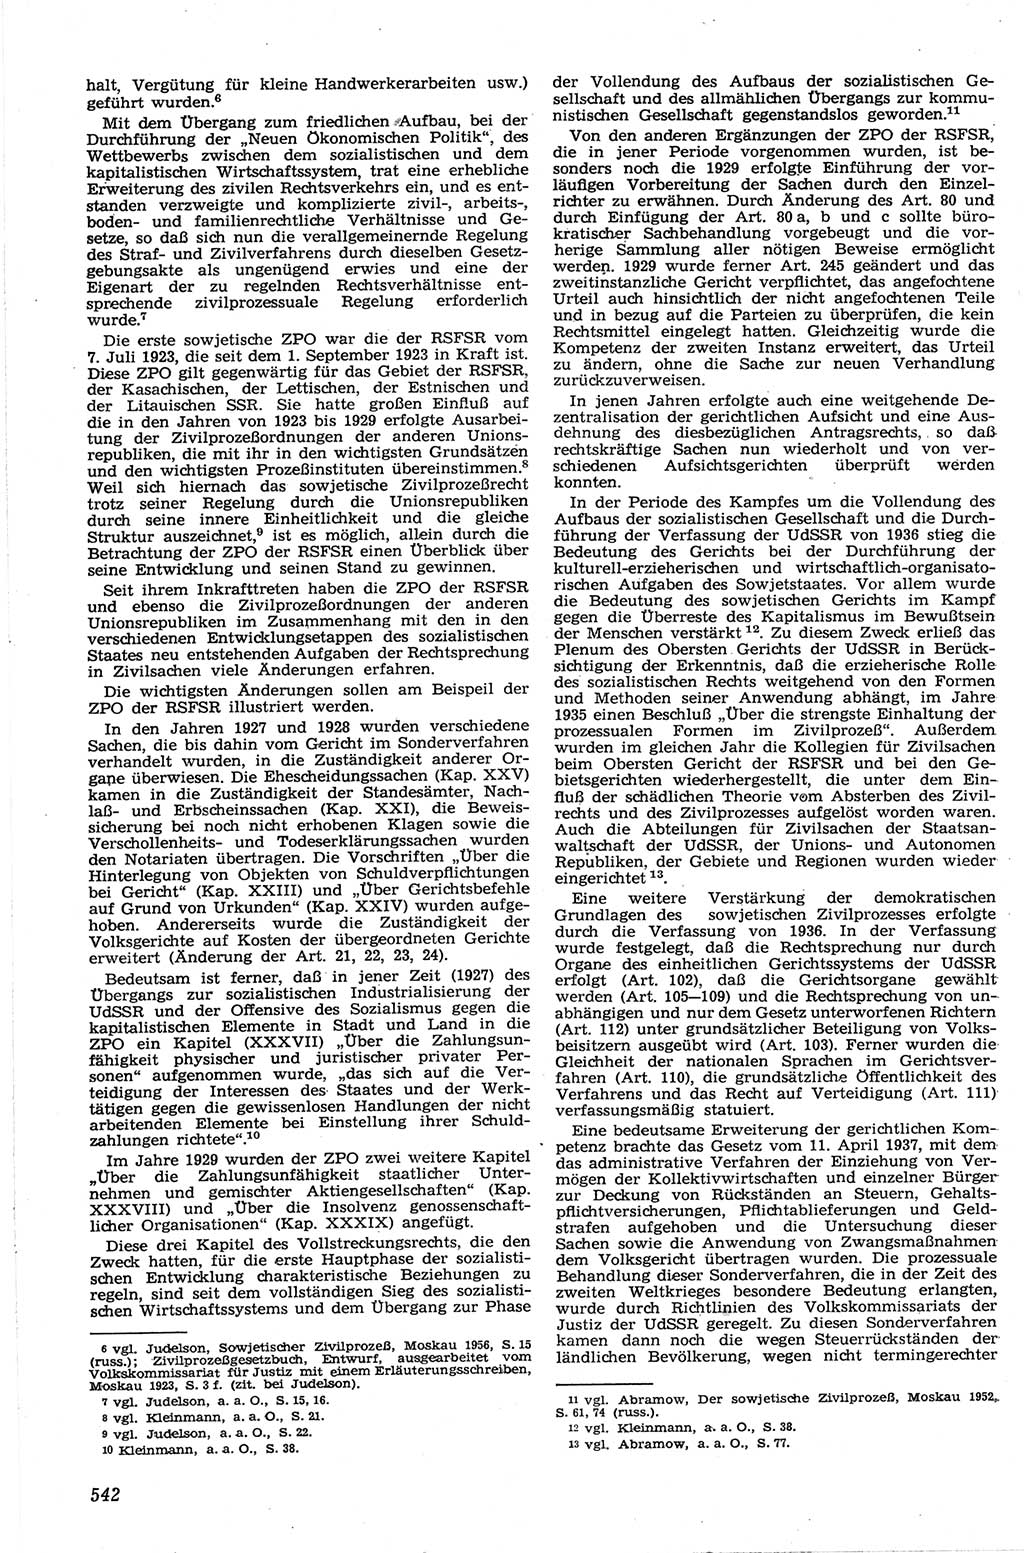 Neue Justiz (NJ), Zeitschrift für Recht und Rechtswissenschaft [Deutsche Demokratische Republik (DDR)], 13. Jahrgang 1959, Seite 542 (NJ DDR 1959, S. 542)